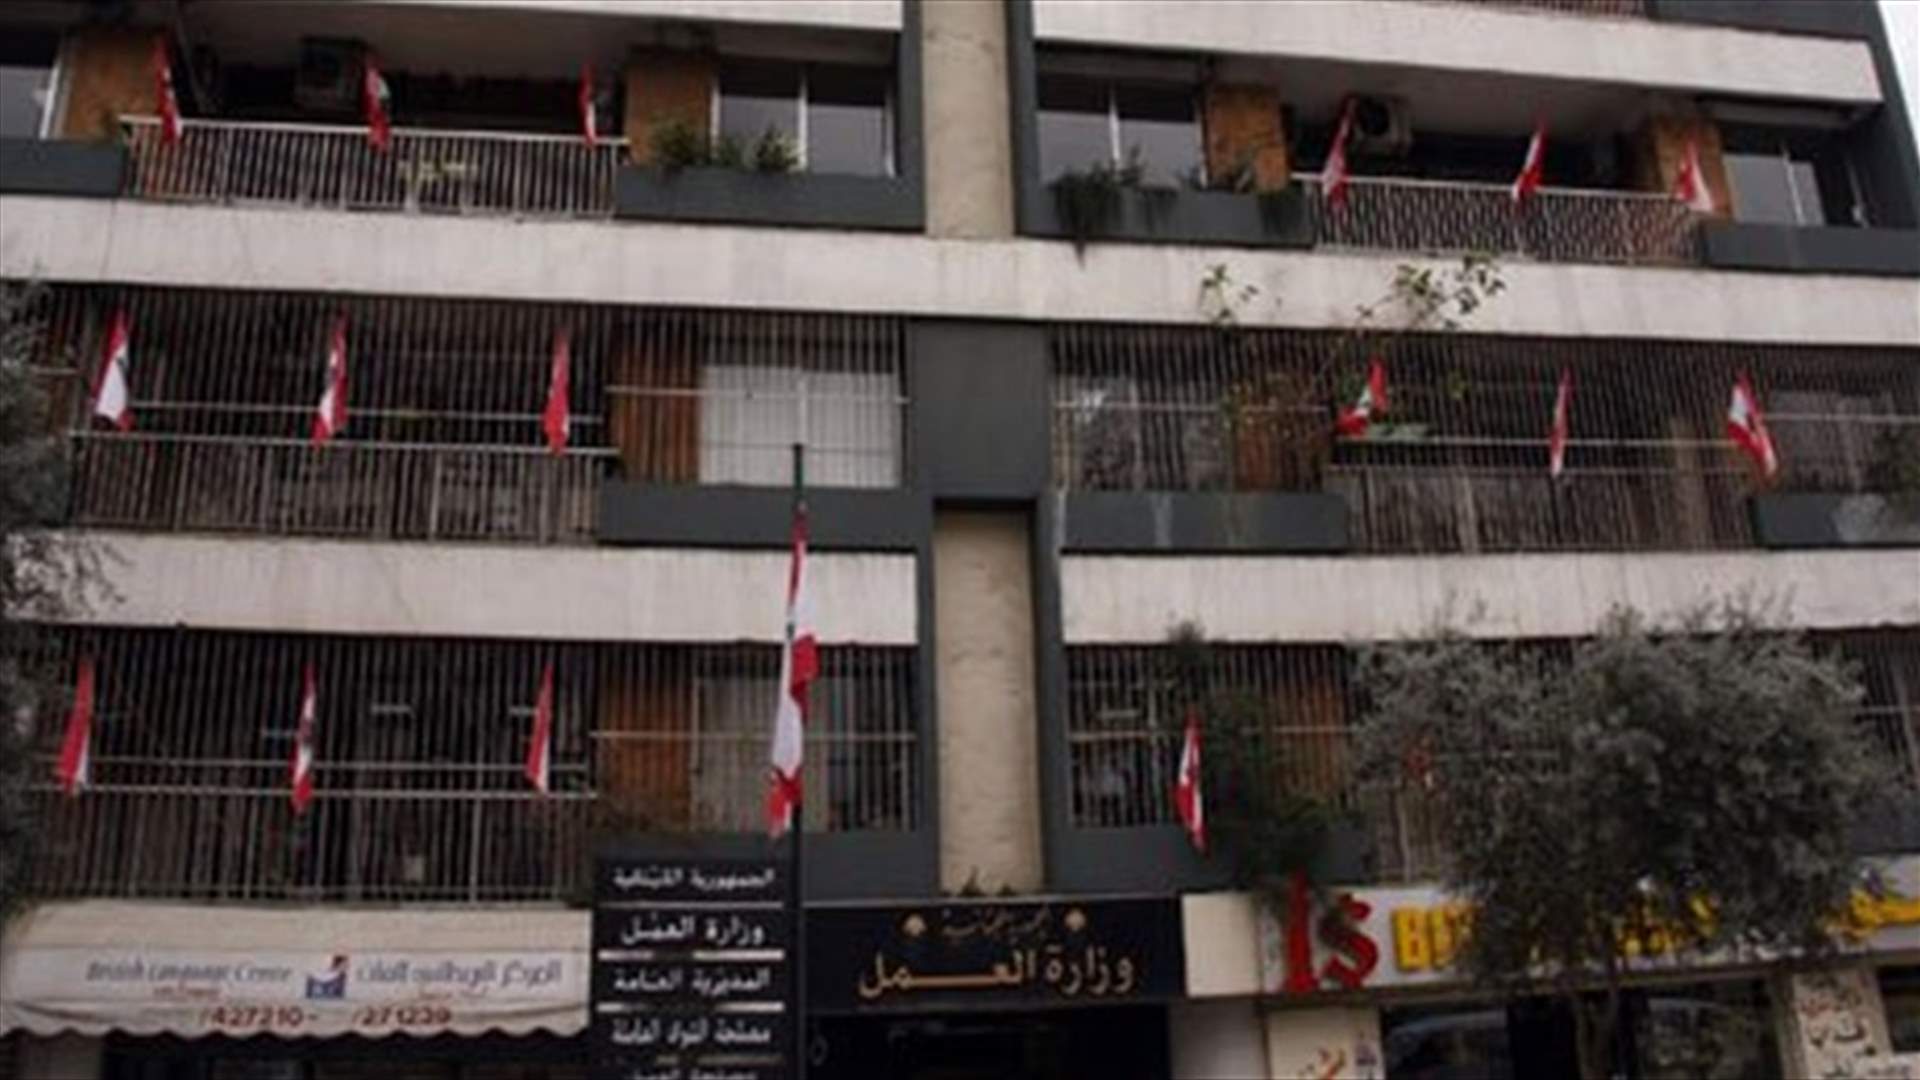 وزارة العمل: التفتيش يعاود مهامه مع انتهاء اضراب القطاع العام